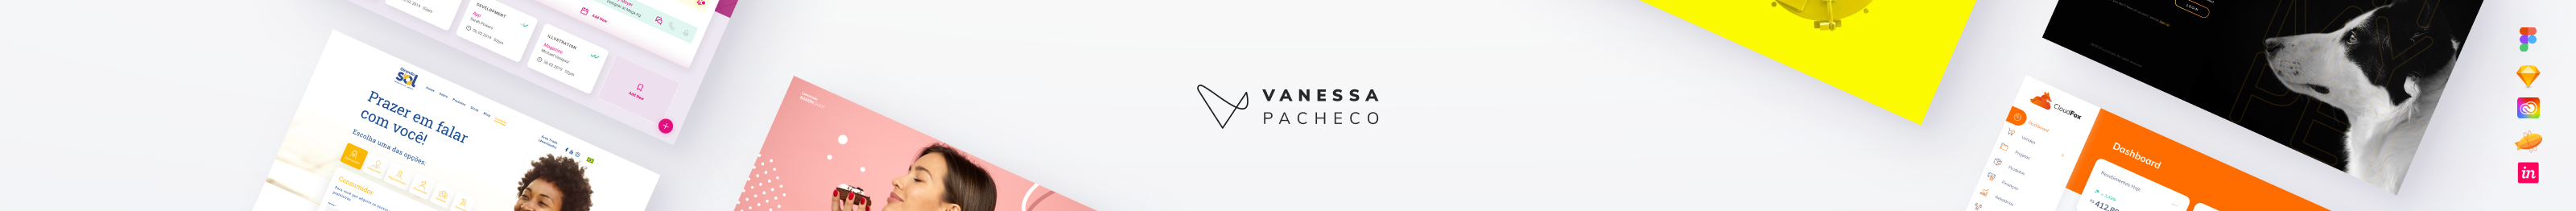 Vanessa Pacheco's profile banner